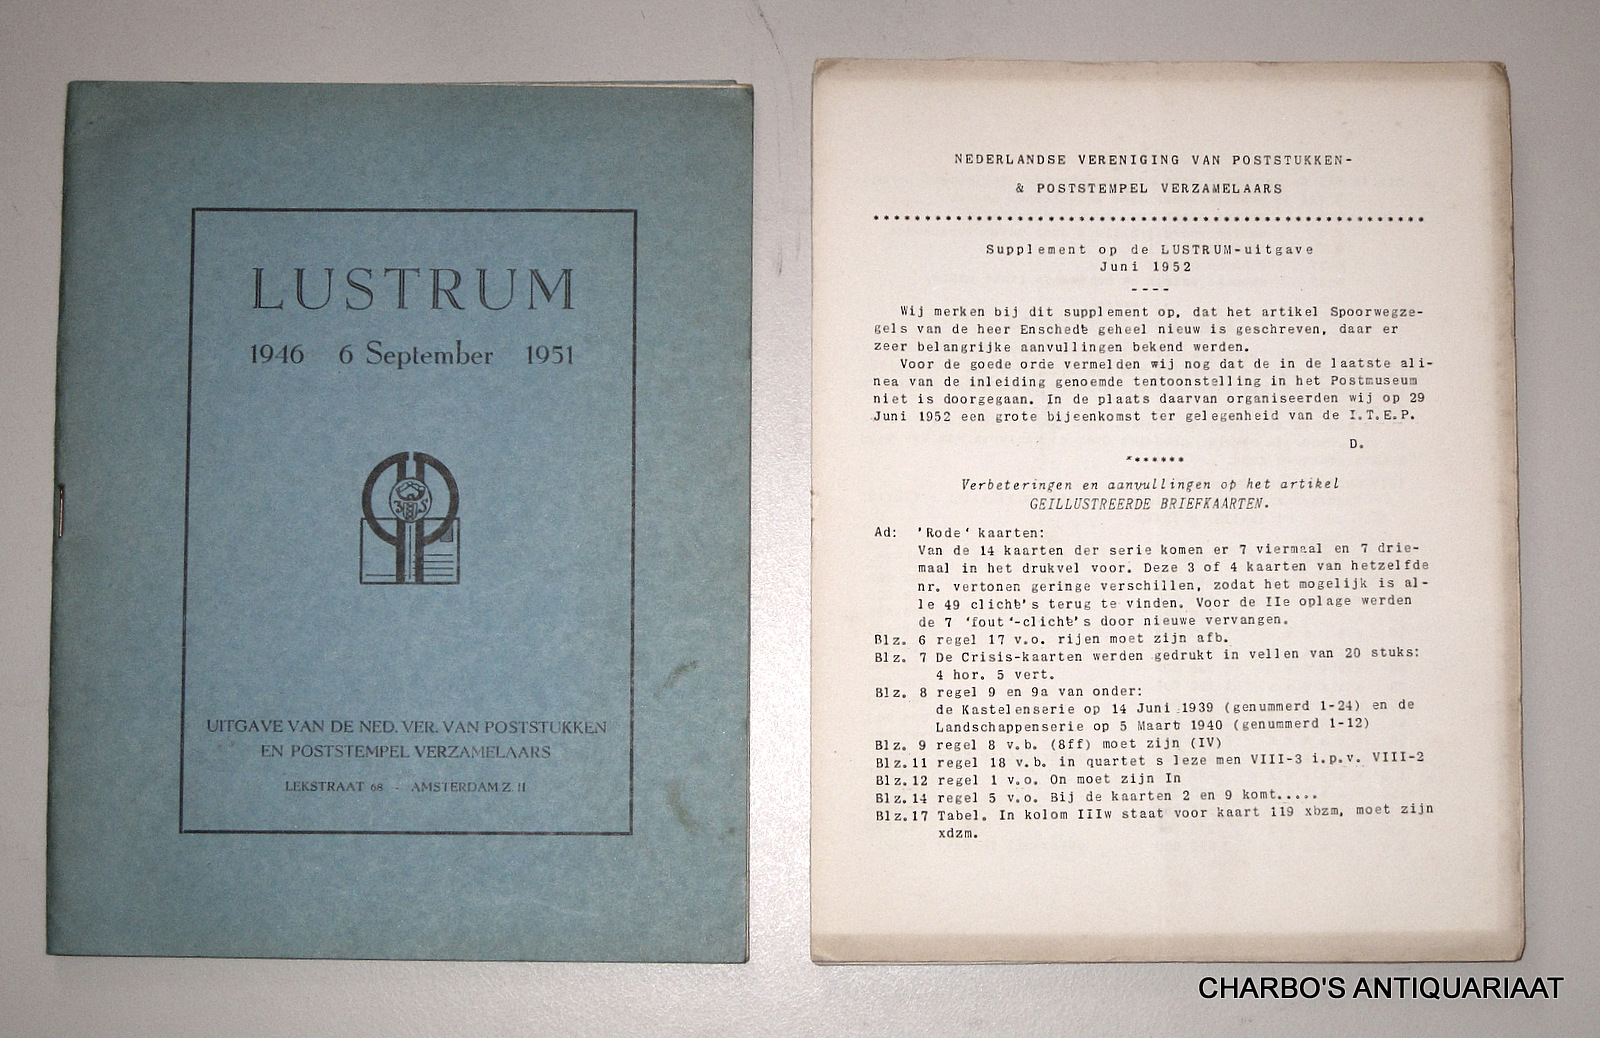 DEKKER, J. & WILLIGEN, A. VAN DER, -  Lustrum-nummer 6 September 1946 - 1951. Uitgave van de Ned. Ver. van Poststukken en Poststempel Verzamelaars.